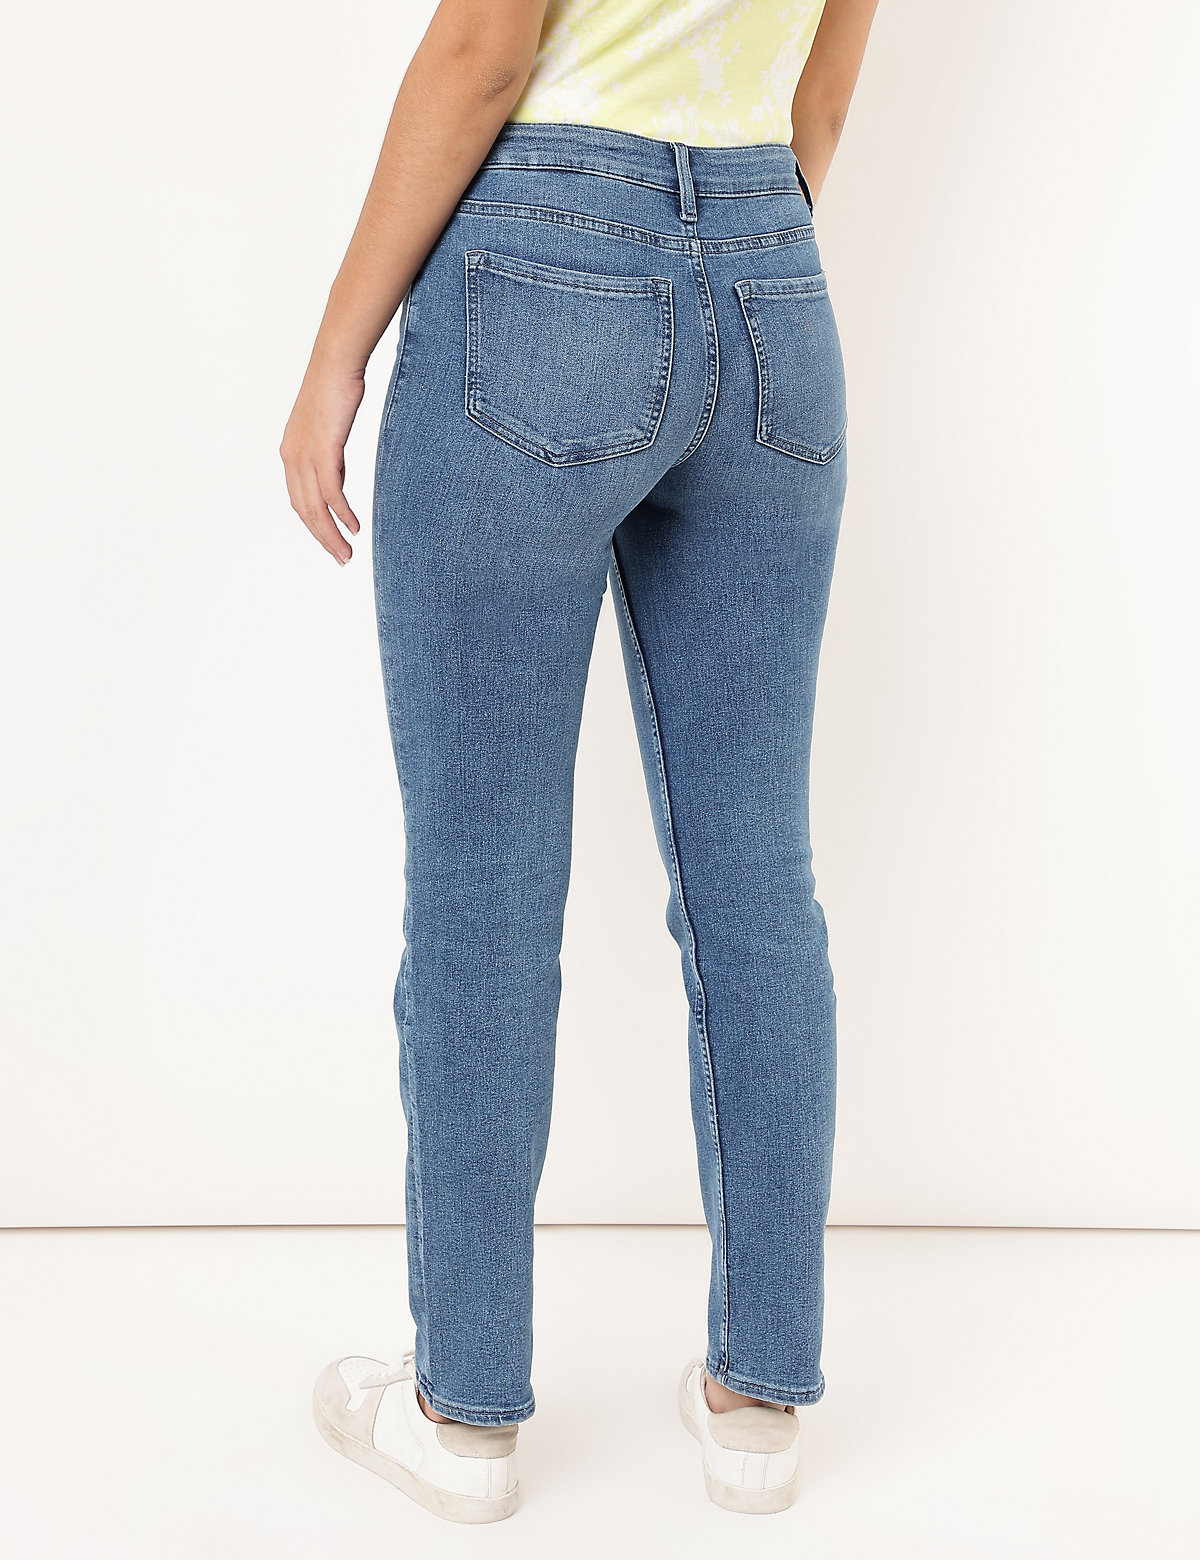 Cotton Mix Plain Straight Fit Jeans